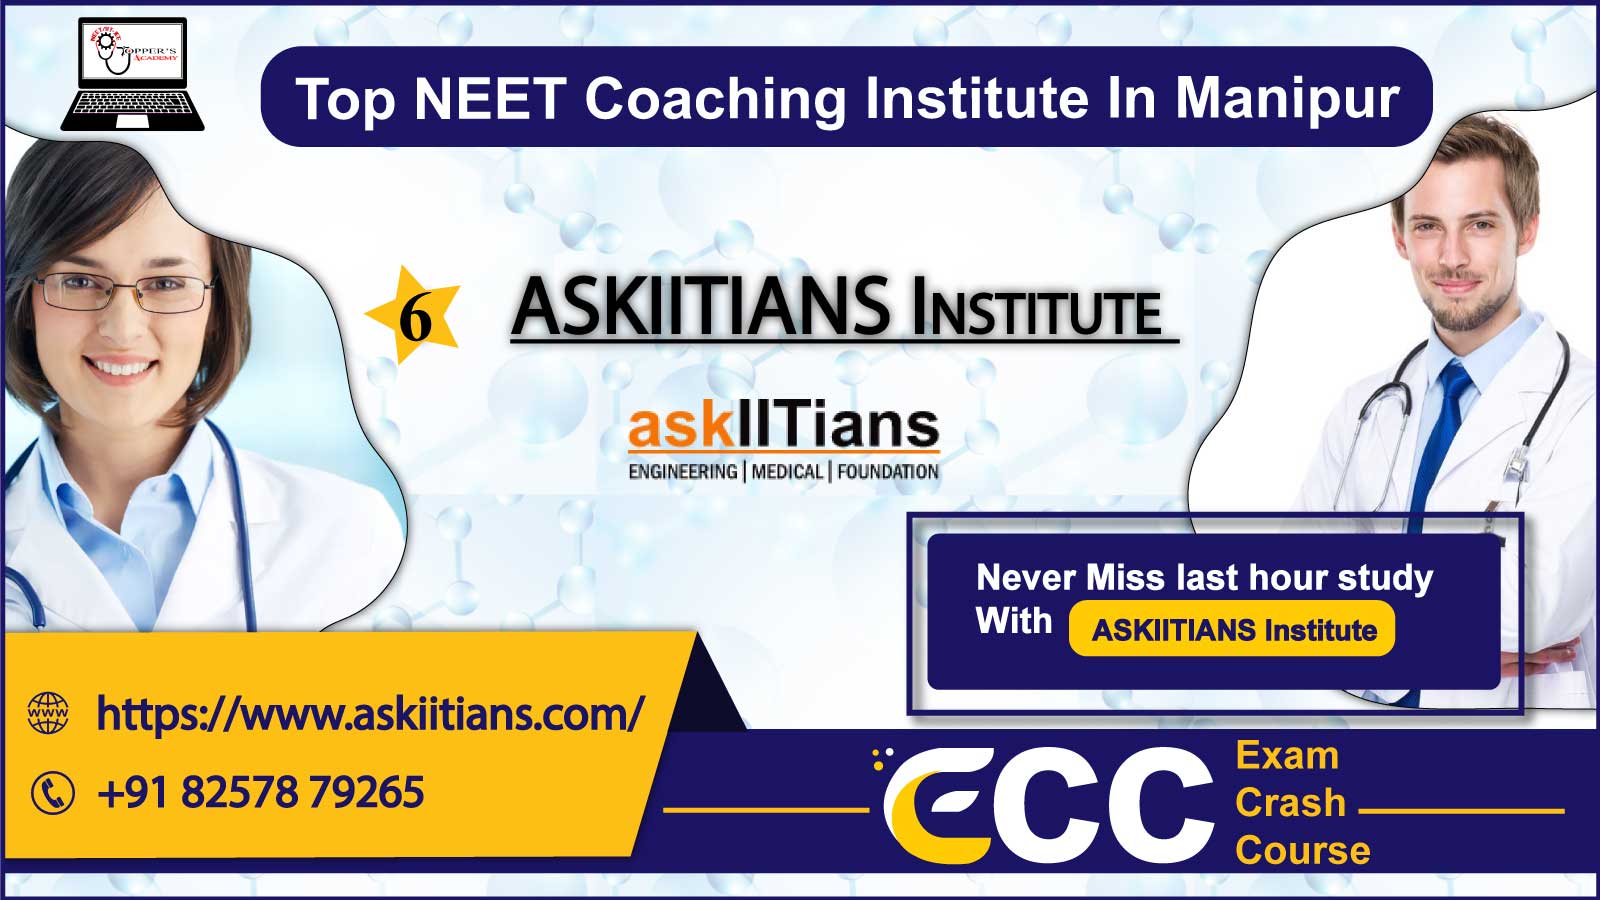 ASKIITIANS Institute NEET Coaching In Manipur